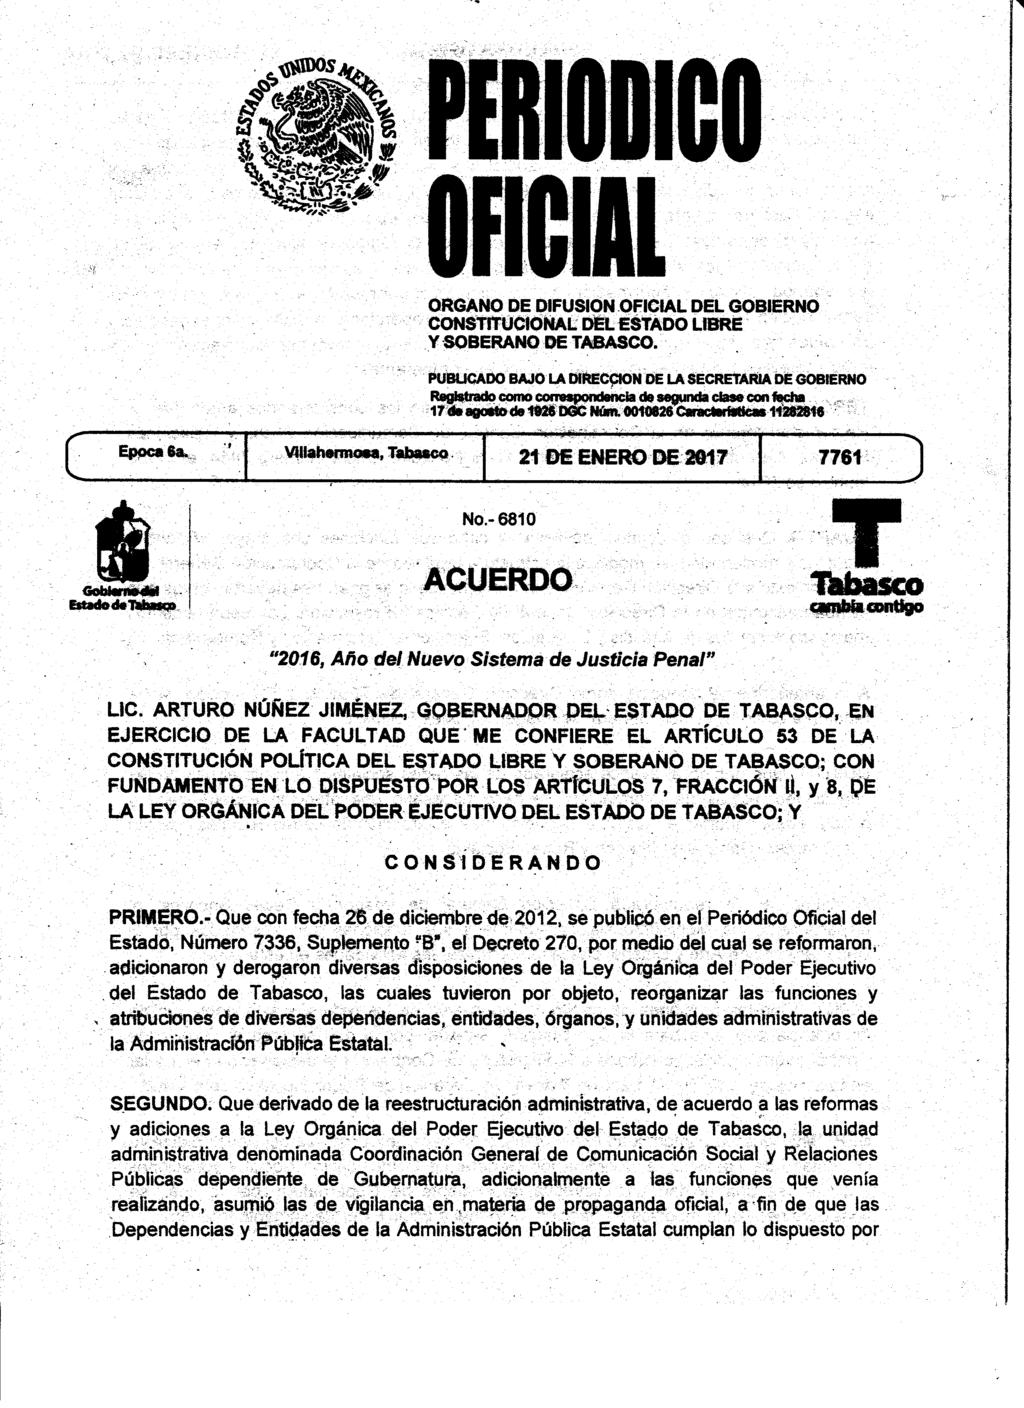 ORGANO DE DIFUSION OFICIAL DEL GOBIERNO CONSTITUCIONAL DEL ESTADO LIBRE Y SOBERANO DE TABASCO.